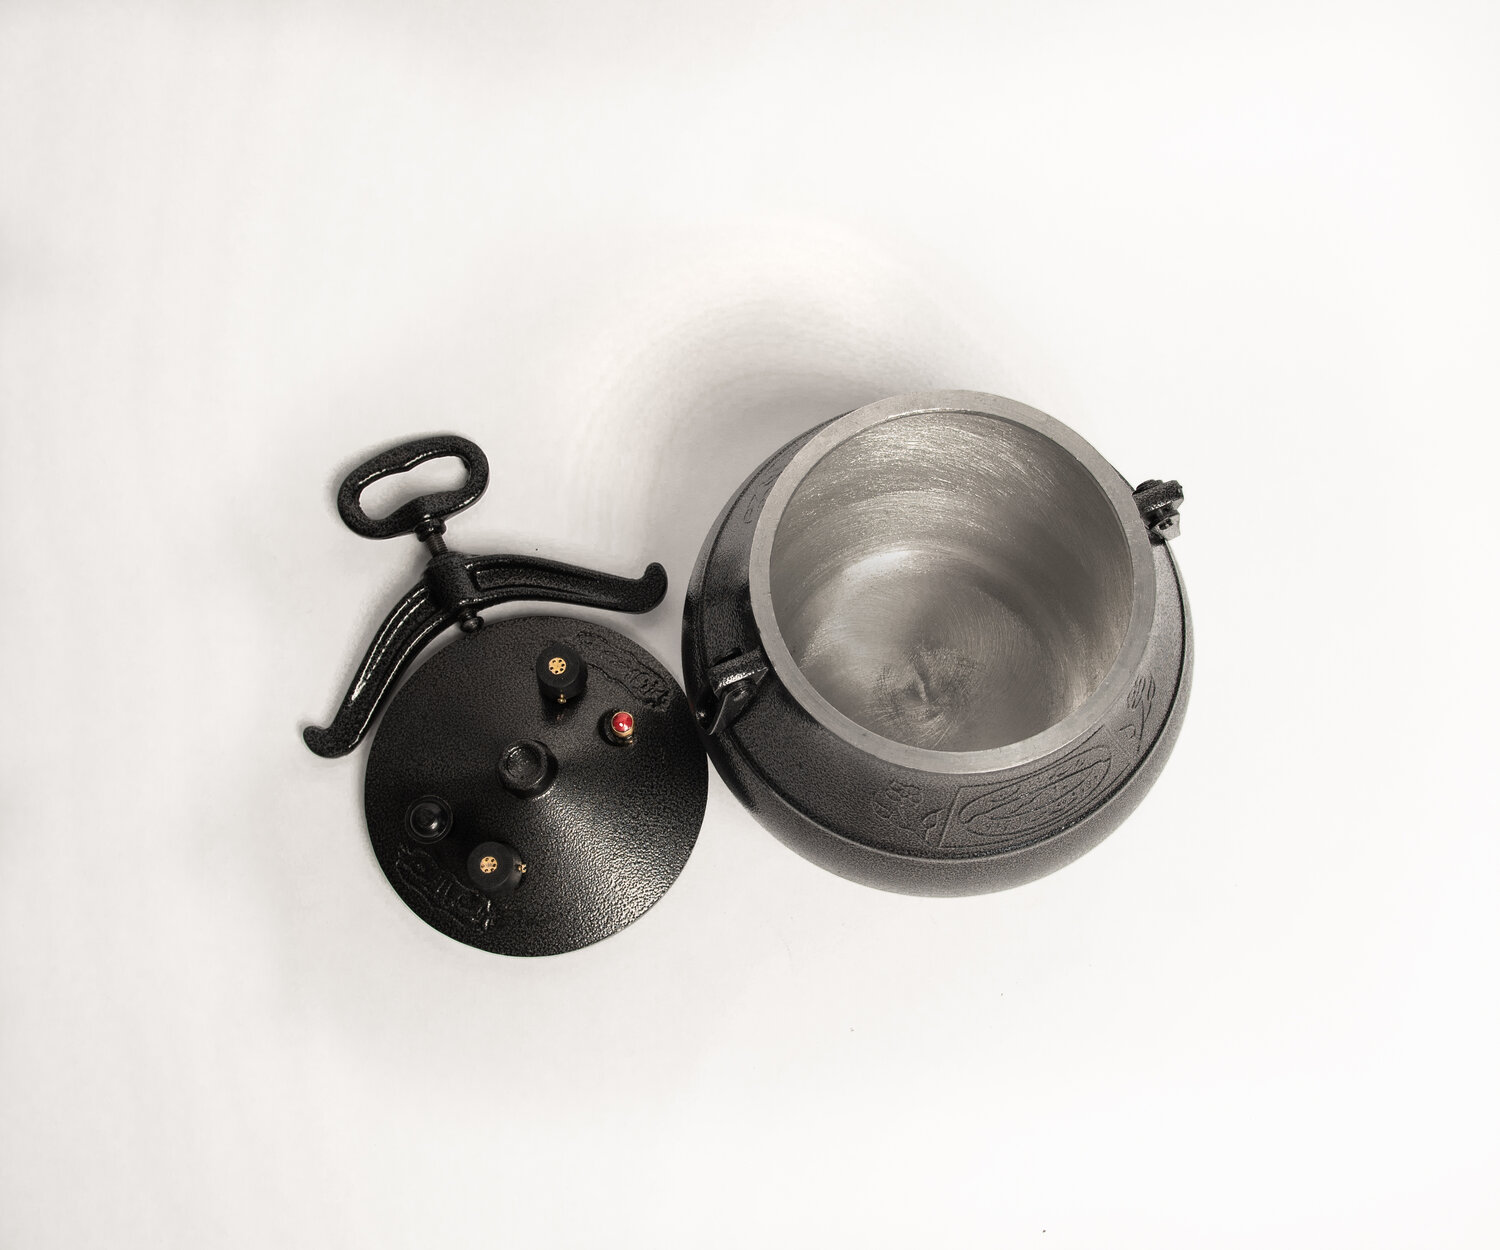 Pressure cooker — Fowler's Makery & Mischief